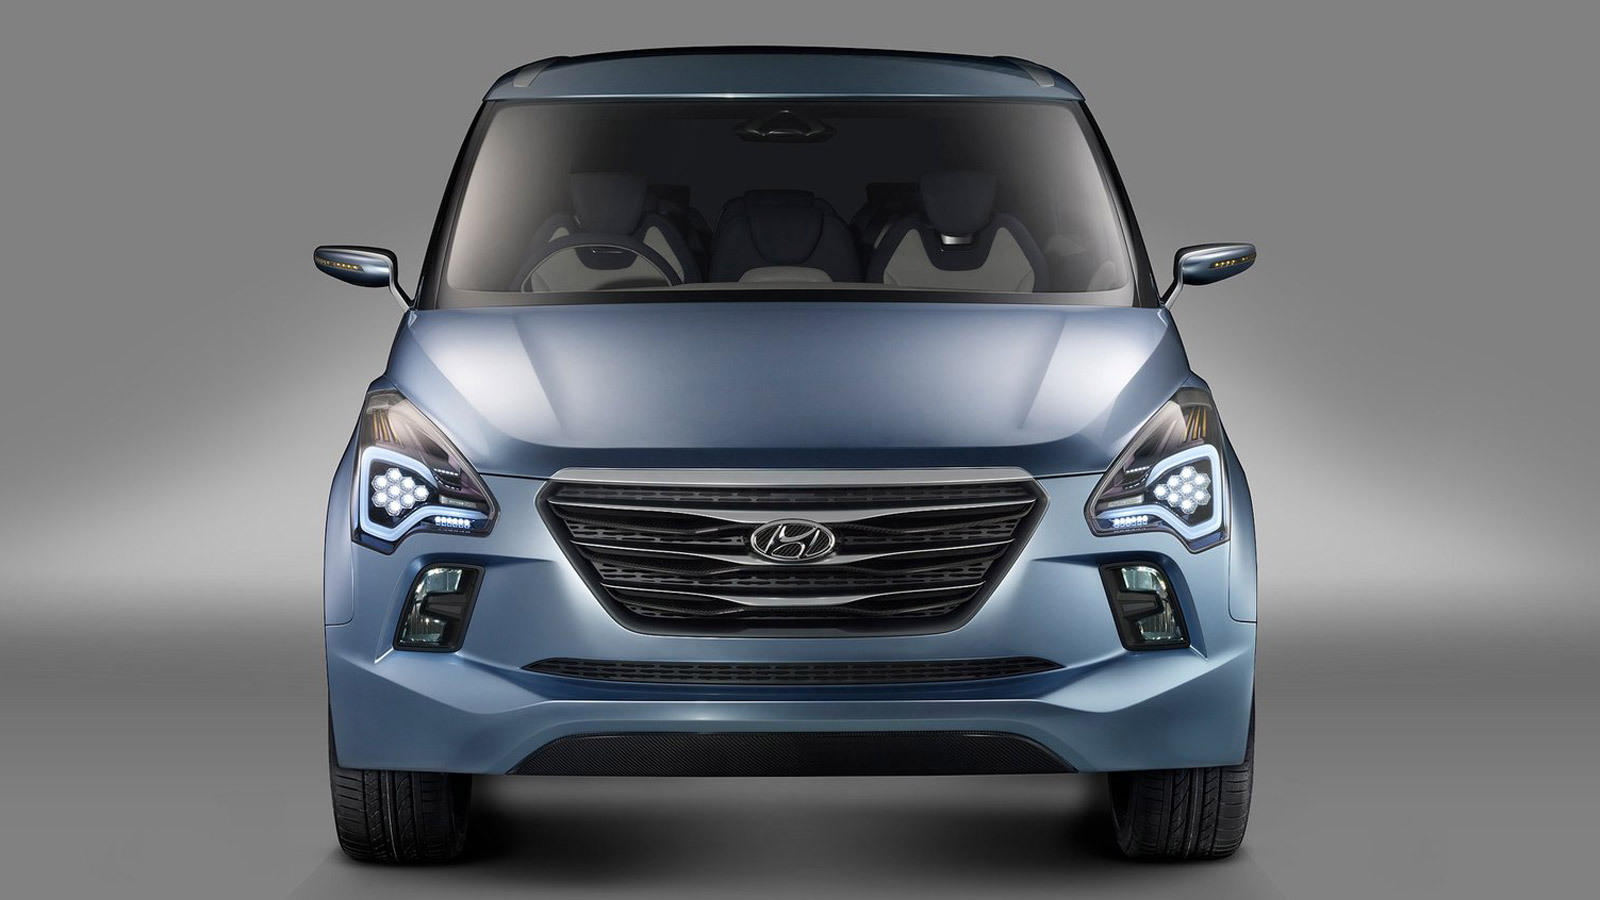 2012 Hyundai Hexa Space Concept (HND7)